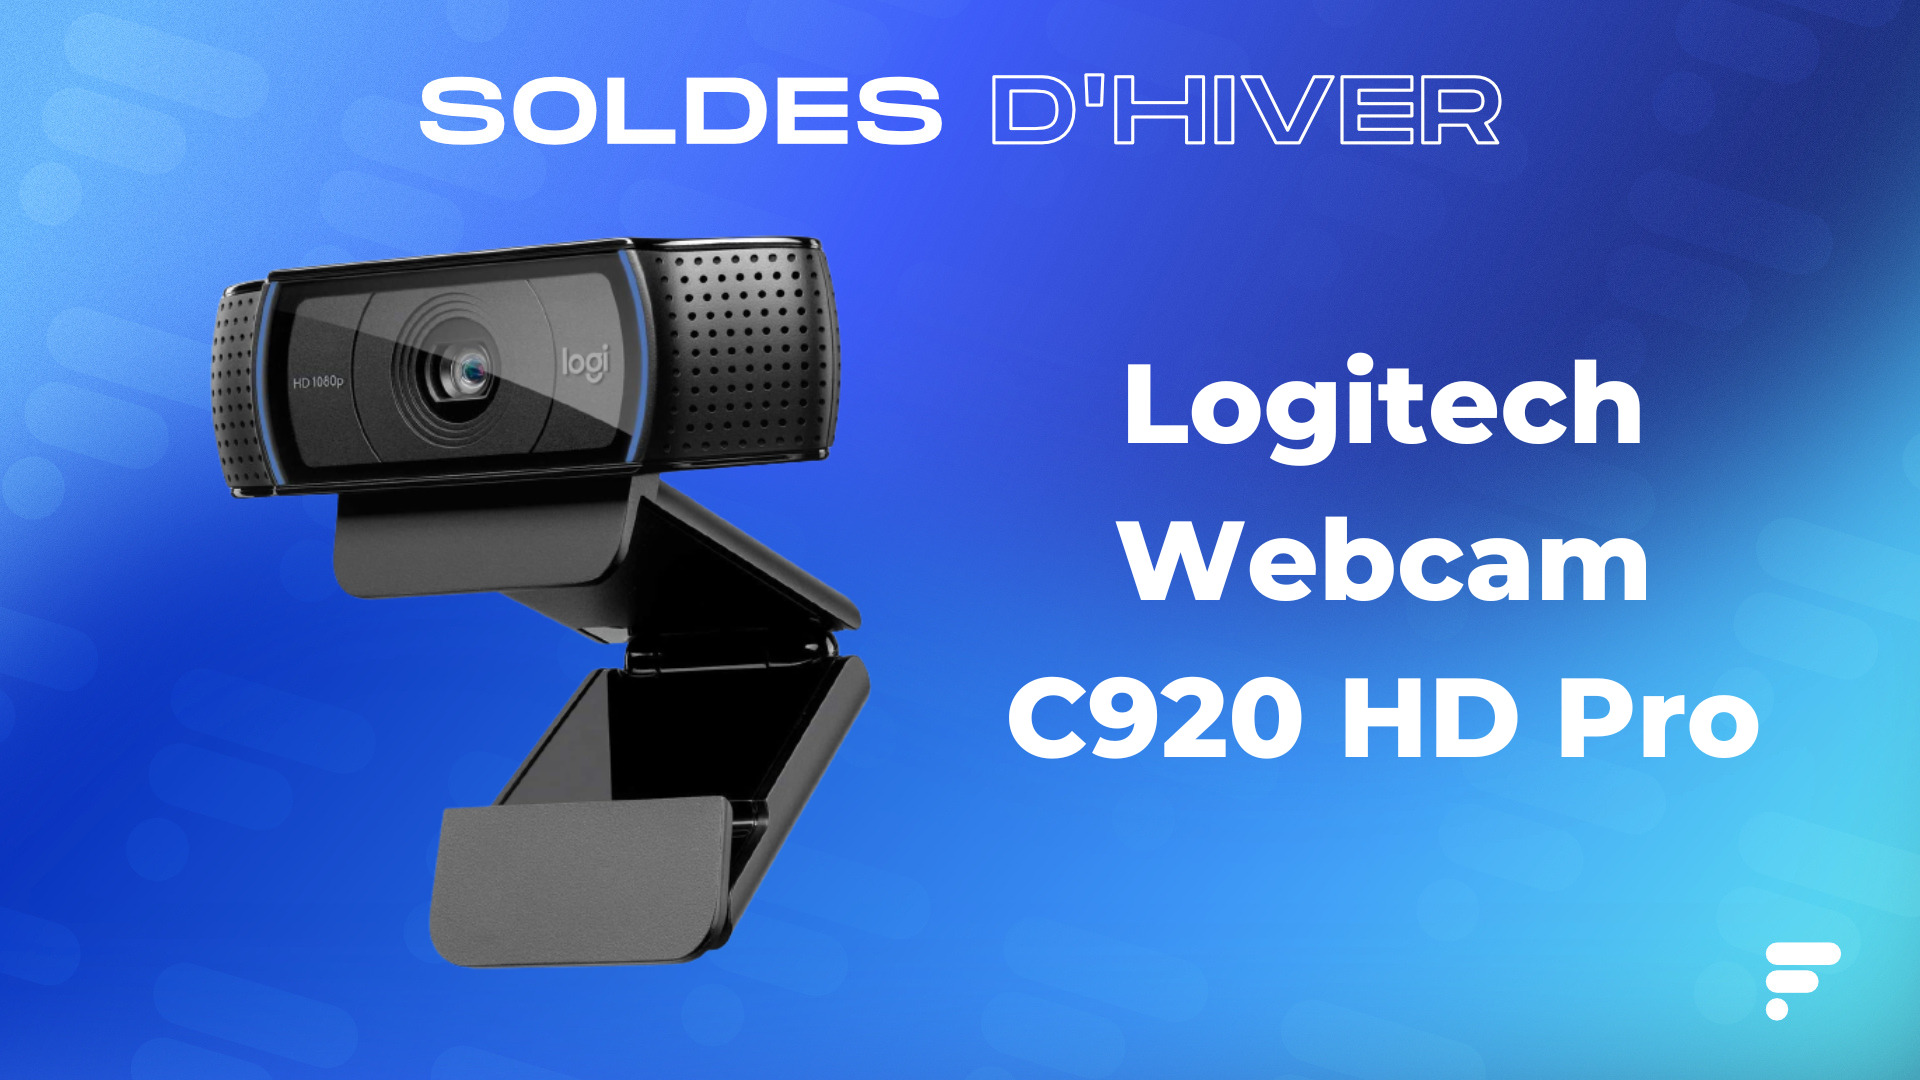 La Logitech Webcam C920 HD Pro a rarement été aussi bon marché que pendant  les soldes